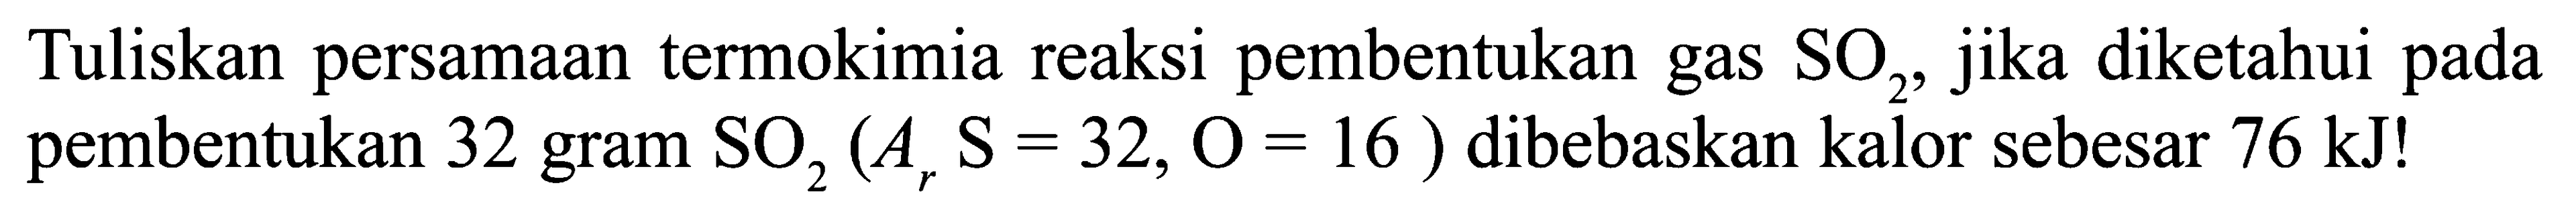 Tuliskan persamaan termokimia reaksi pembentukan gas SO2, jika diketahui pada pembentukan 32 gram SO2, (Ar S = 32, O = 16 ) dibebaskan kalor sebesar 76 kJ!